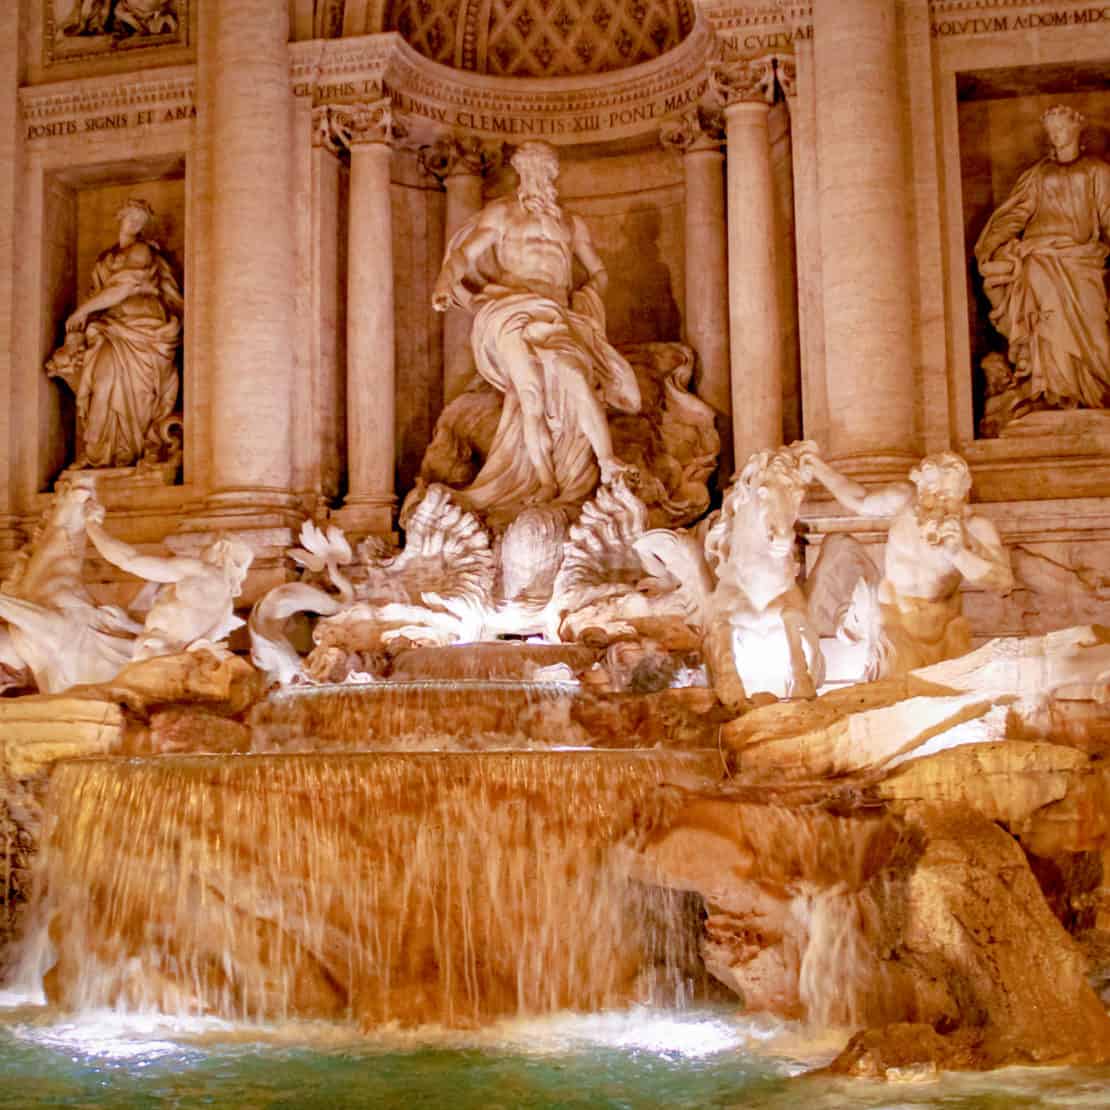 Italy - Rome - Trevi Fountain sculptures as a famous Italian landmark